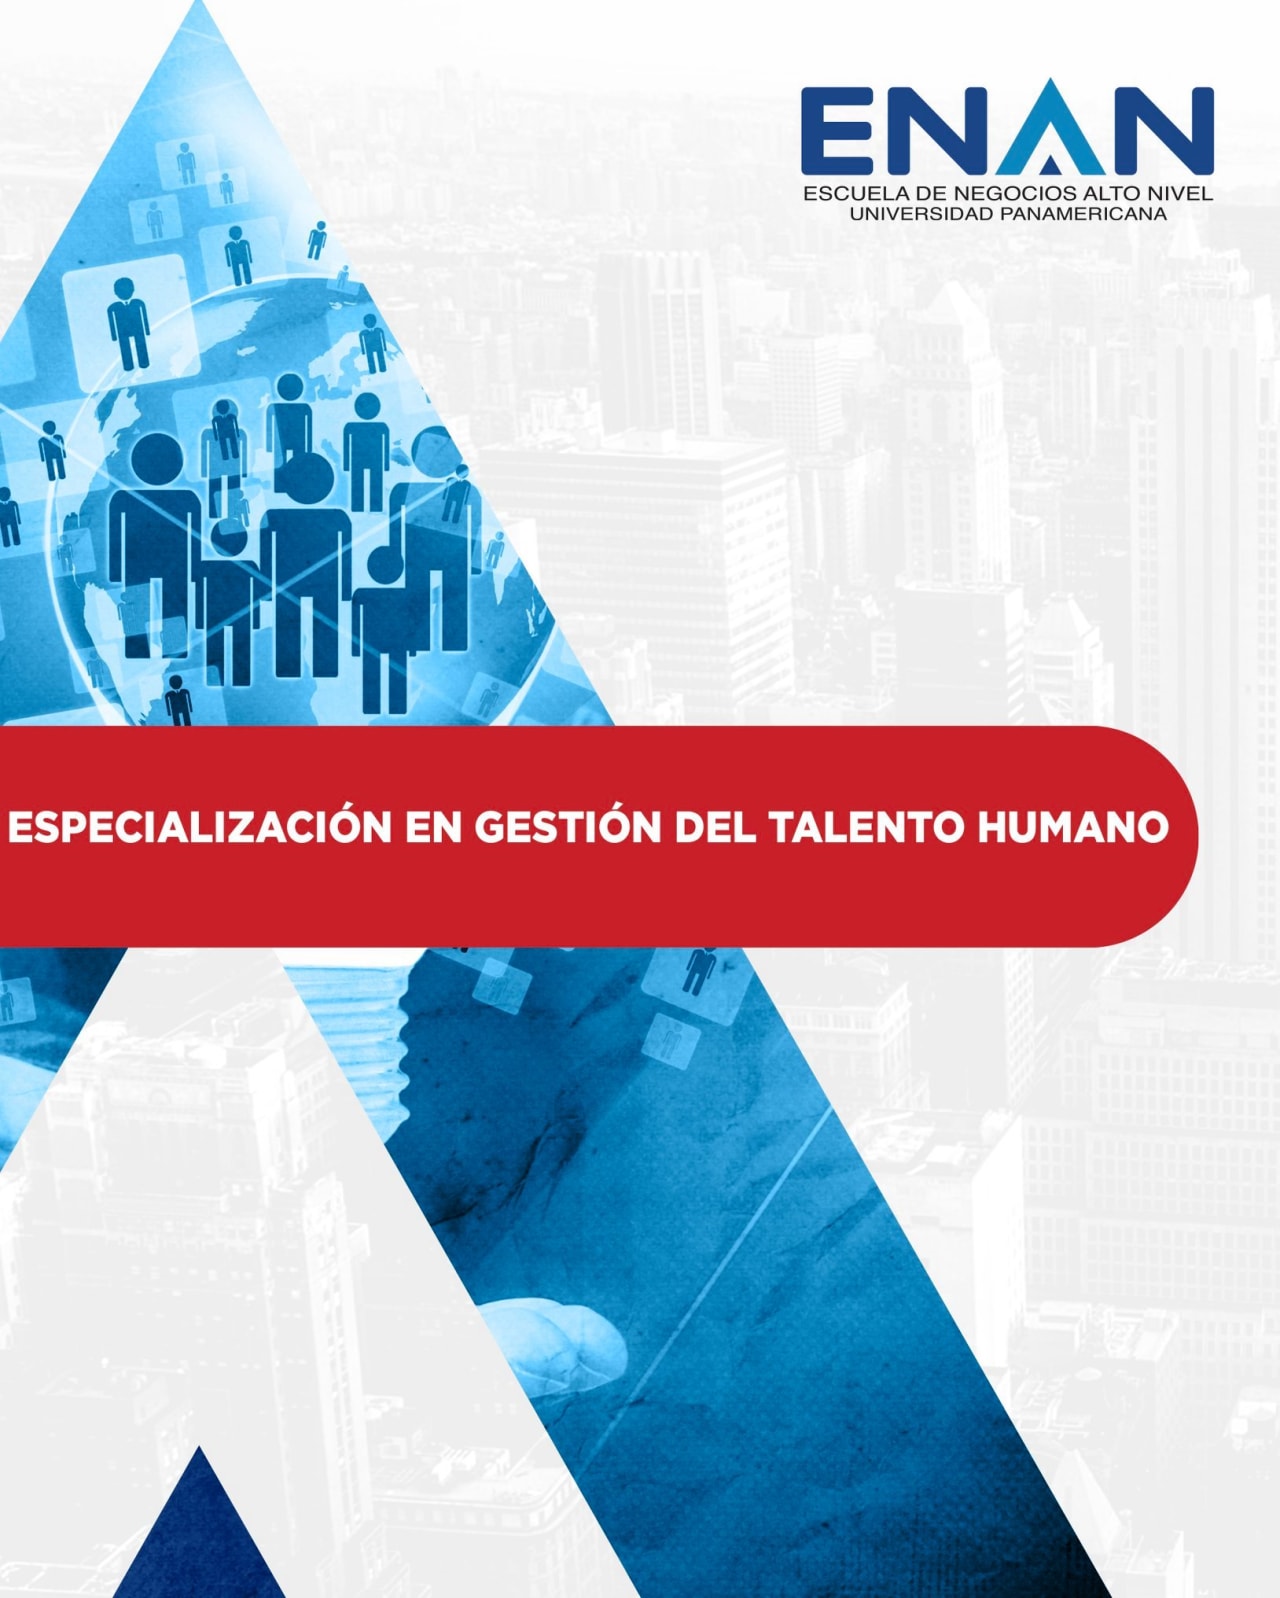 Escuela de Negocios Alto Nivel - Universidad Panamericana de Guatemala ความเชี่ยวชาญในการจัดการความสามารถของมนุษย์